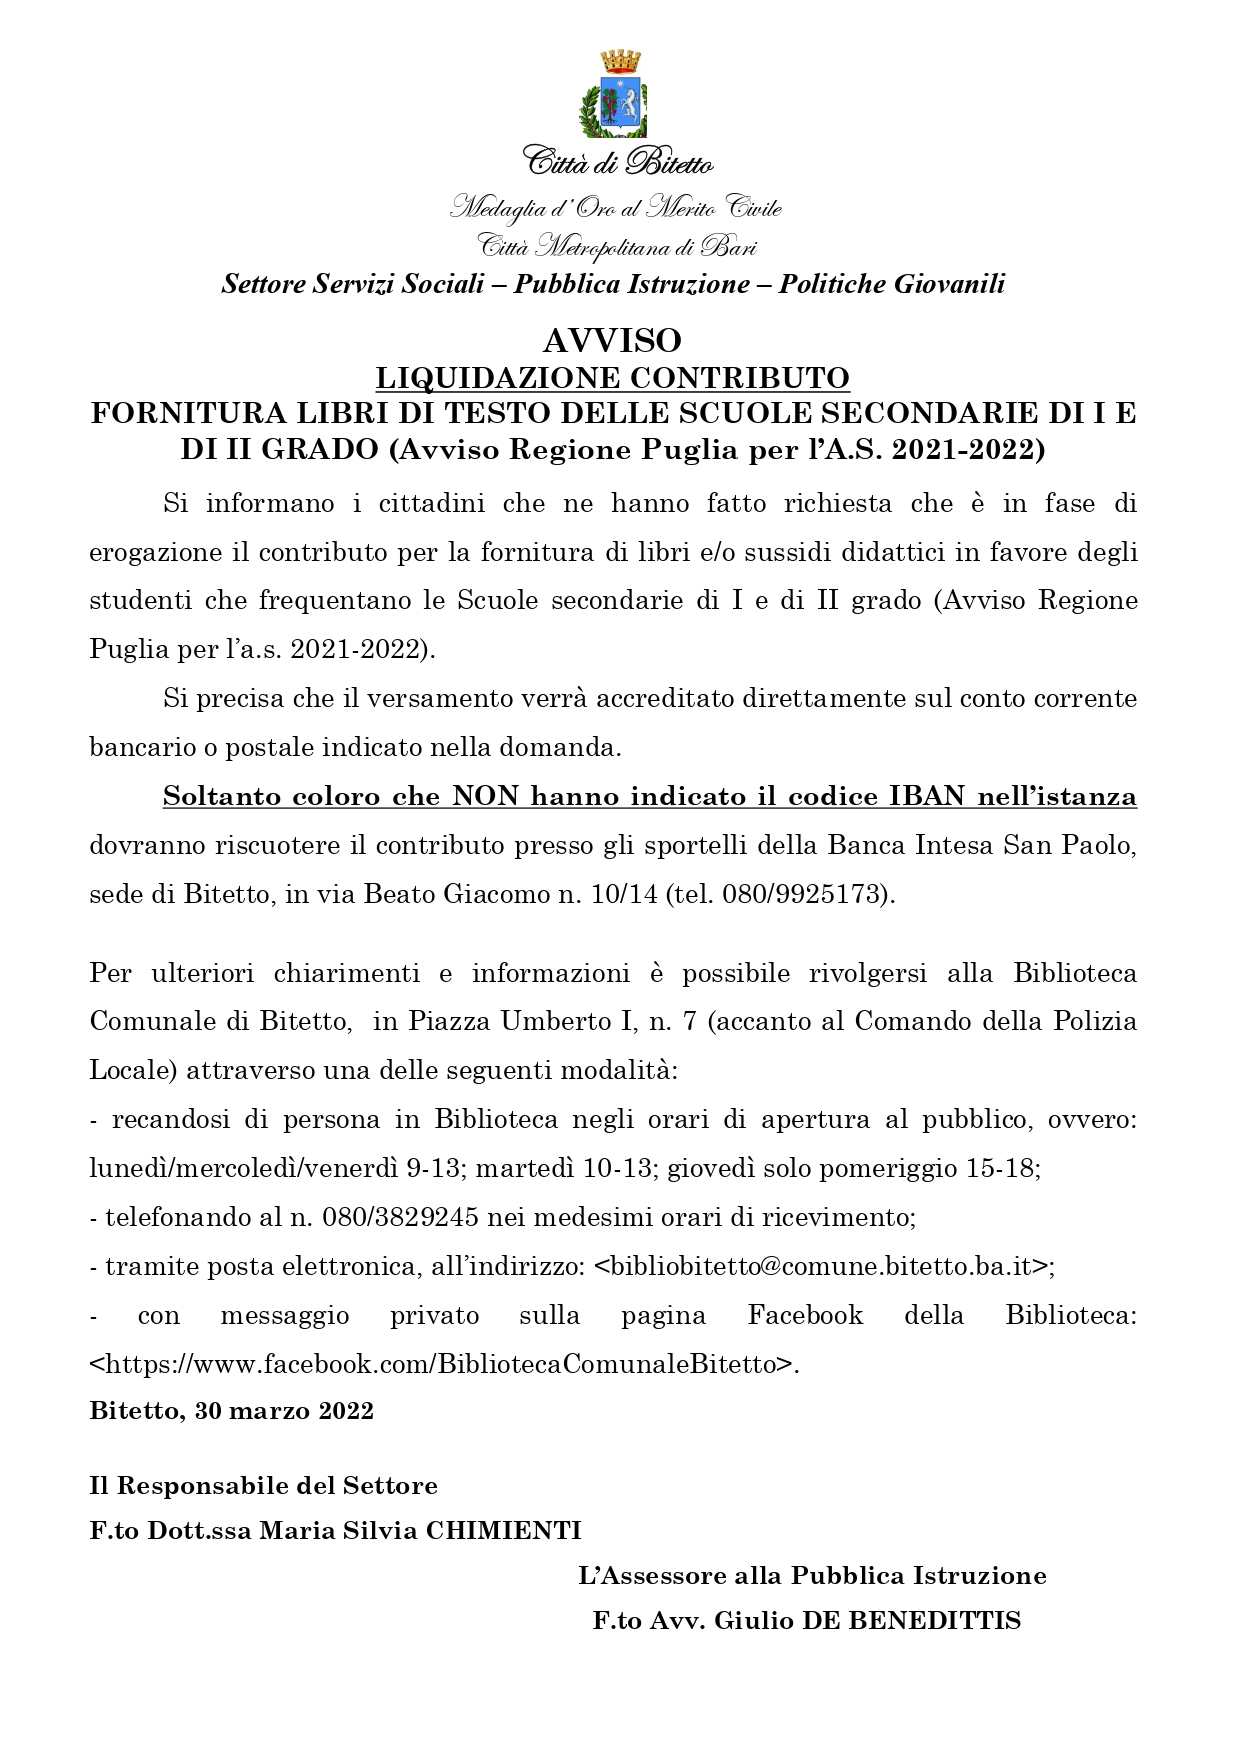 AVVISO LIQUIDAZIONE CONTRIBUTO FORNITURA LIBRI DI TESTO DELLE SCUOLE SECONDARIE DI I E DI II GRADO (Avviso Regione Puglia per l’A.S. 2021-2022)